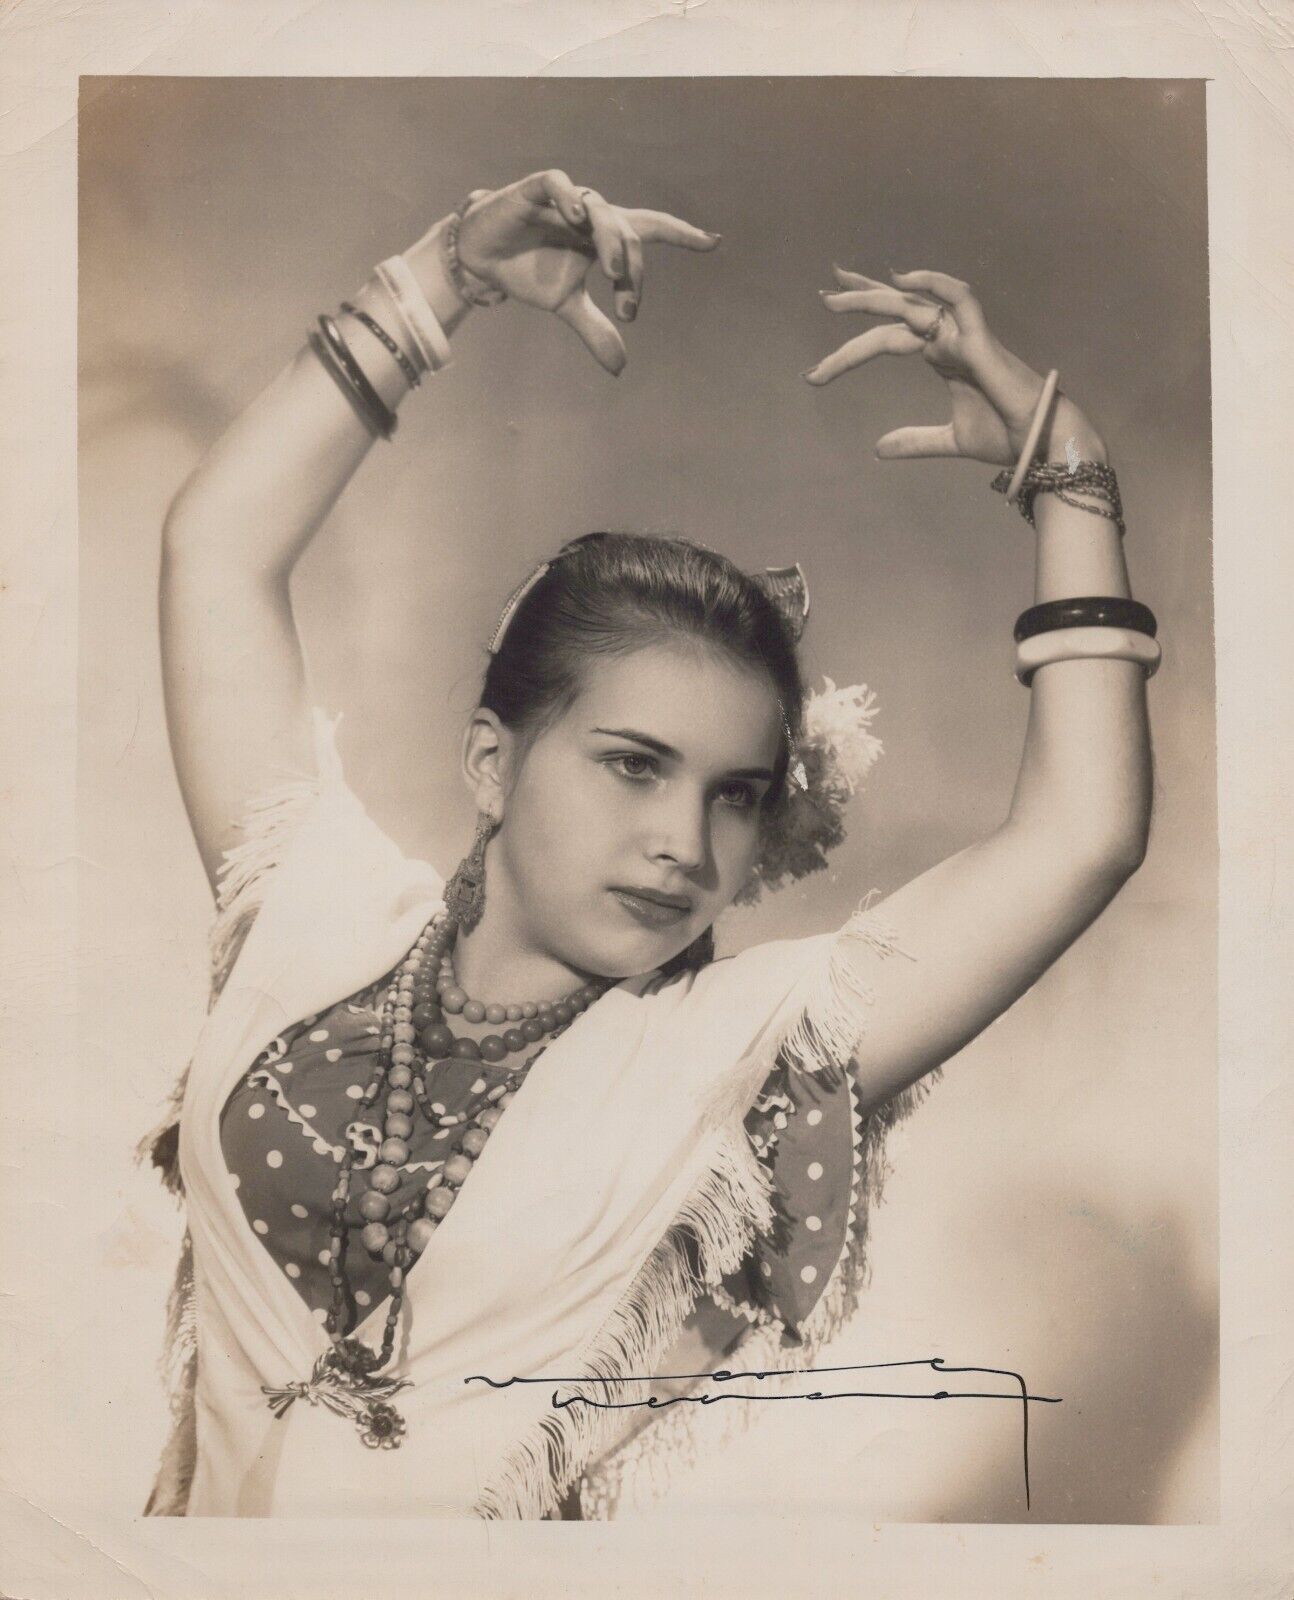 VINTAGE SEDUCTIVE BOMSHELL CUBAN DANCER OLGA IMPERIO CUBA 1950s ORIG Photo Y 409